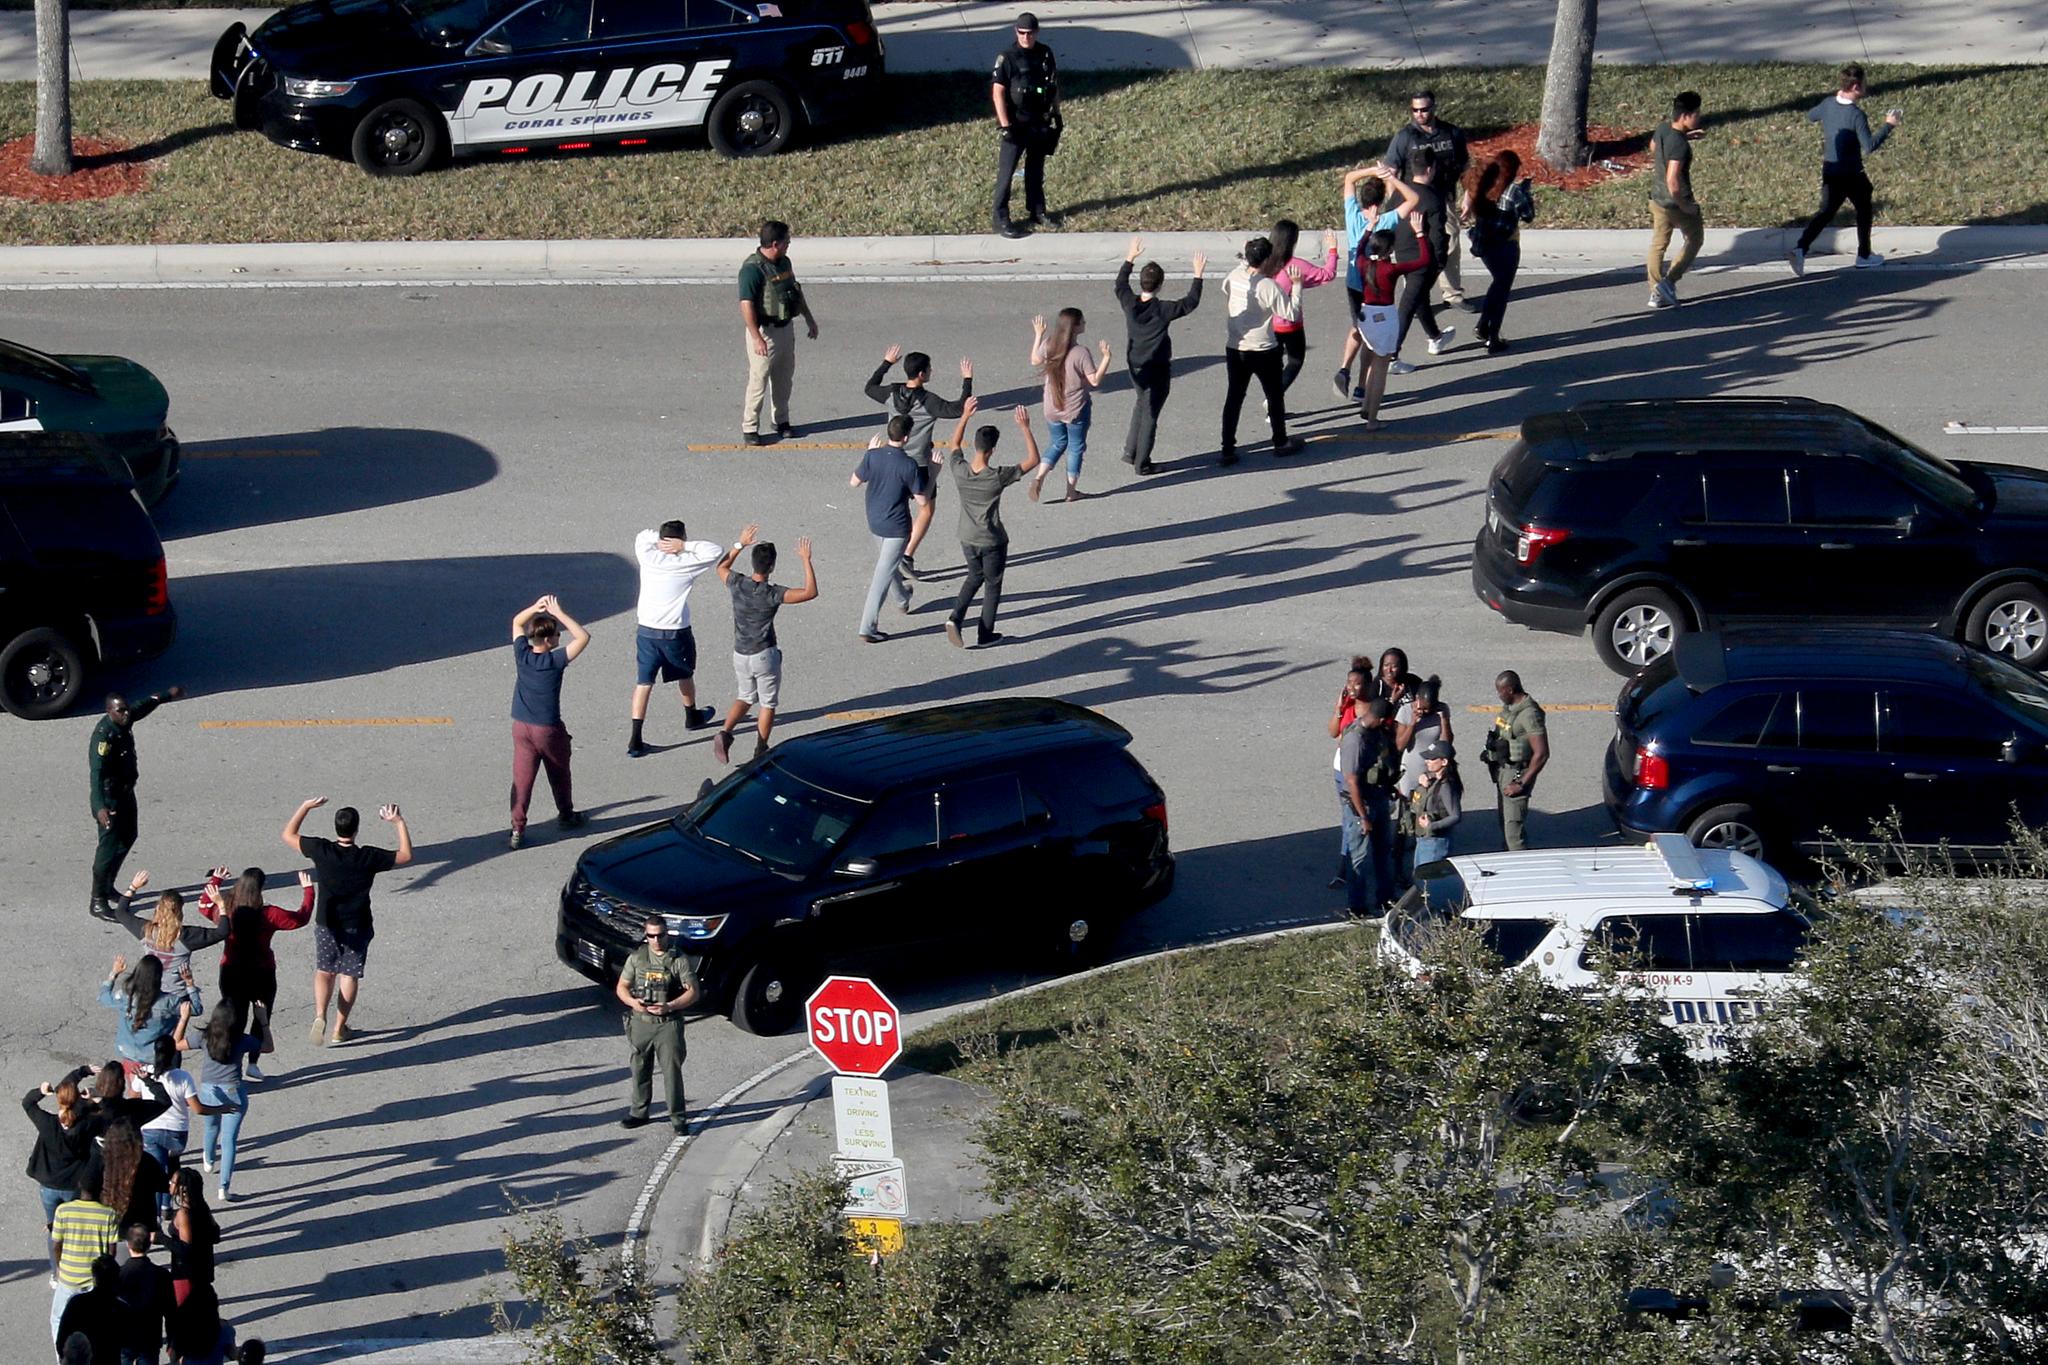 Elever blir geleidet ut av politiet etter masseskytingen på skolen i Parkland. Foto: Mike Stocker / South Florida Sun-Sentinel / AP / NTB scanpix